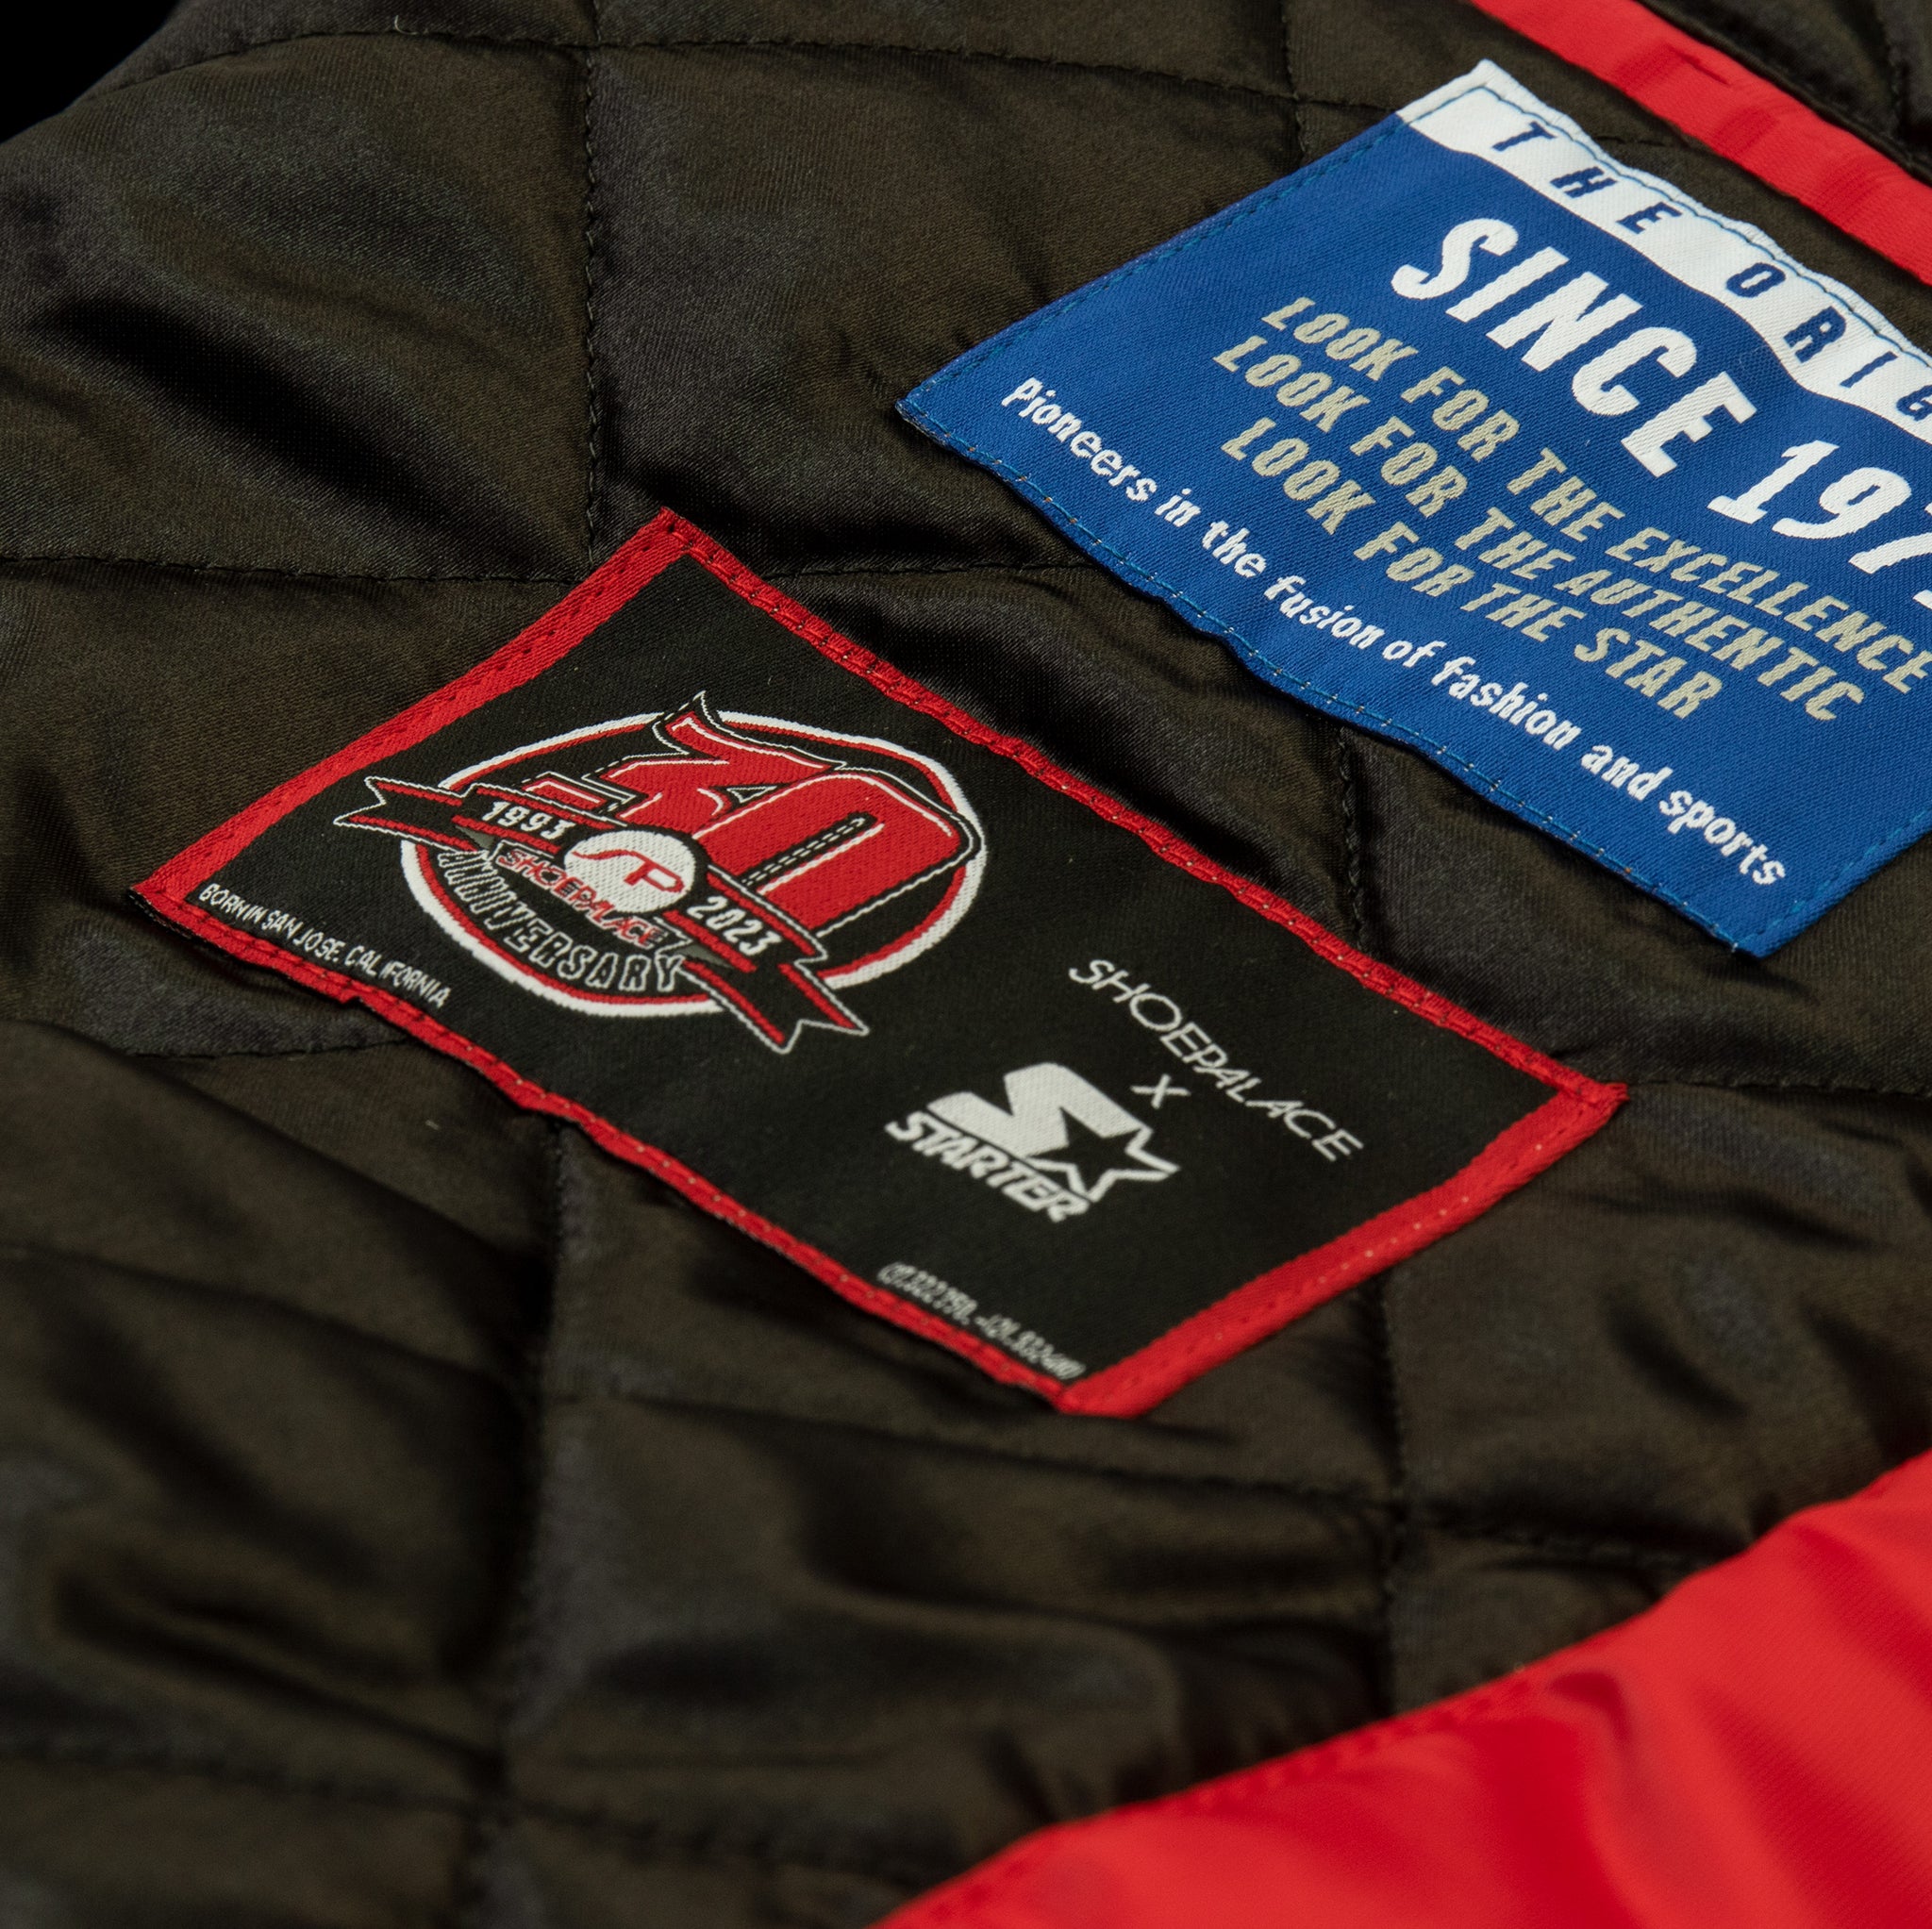 NEW Starter NBA Chicago Bulls Jordan Satin Bomber Jacket Authentic Black  Label